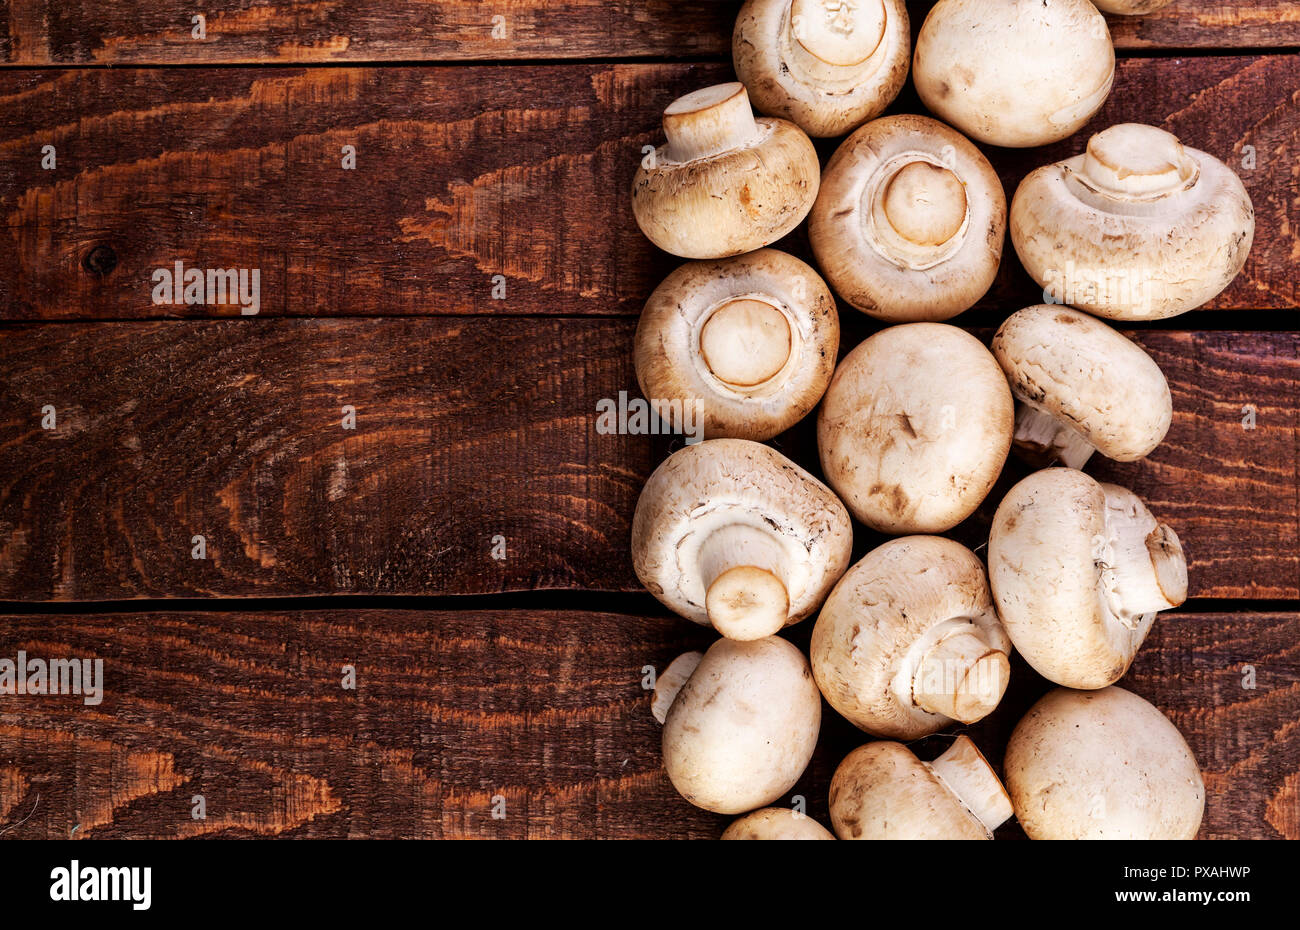 Champignon champignons frais sur la table en bois, vue du dessus. Copy space Banque D'Images